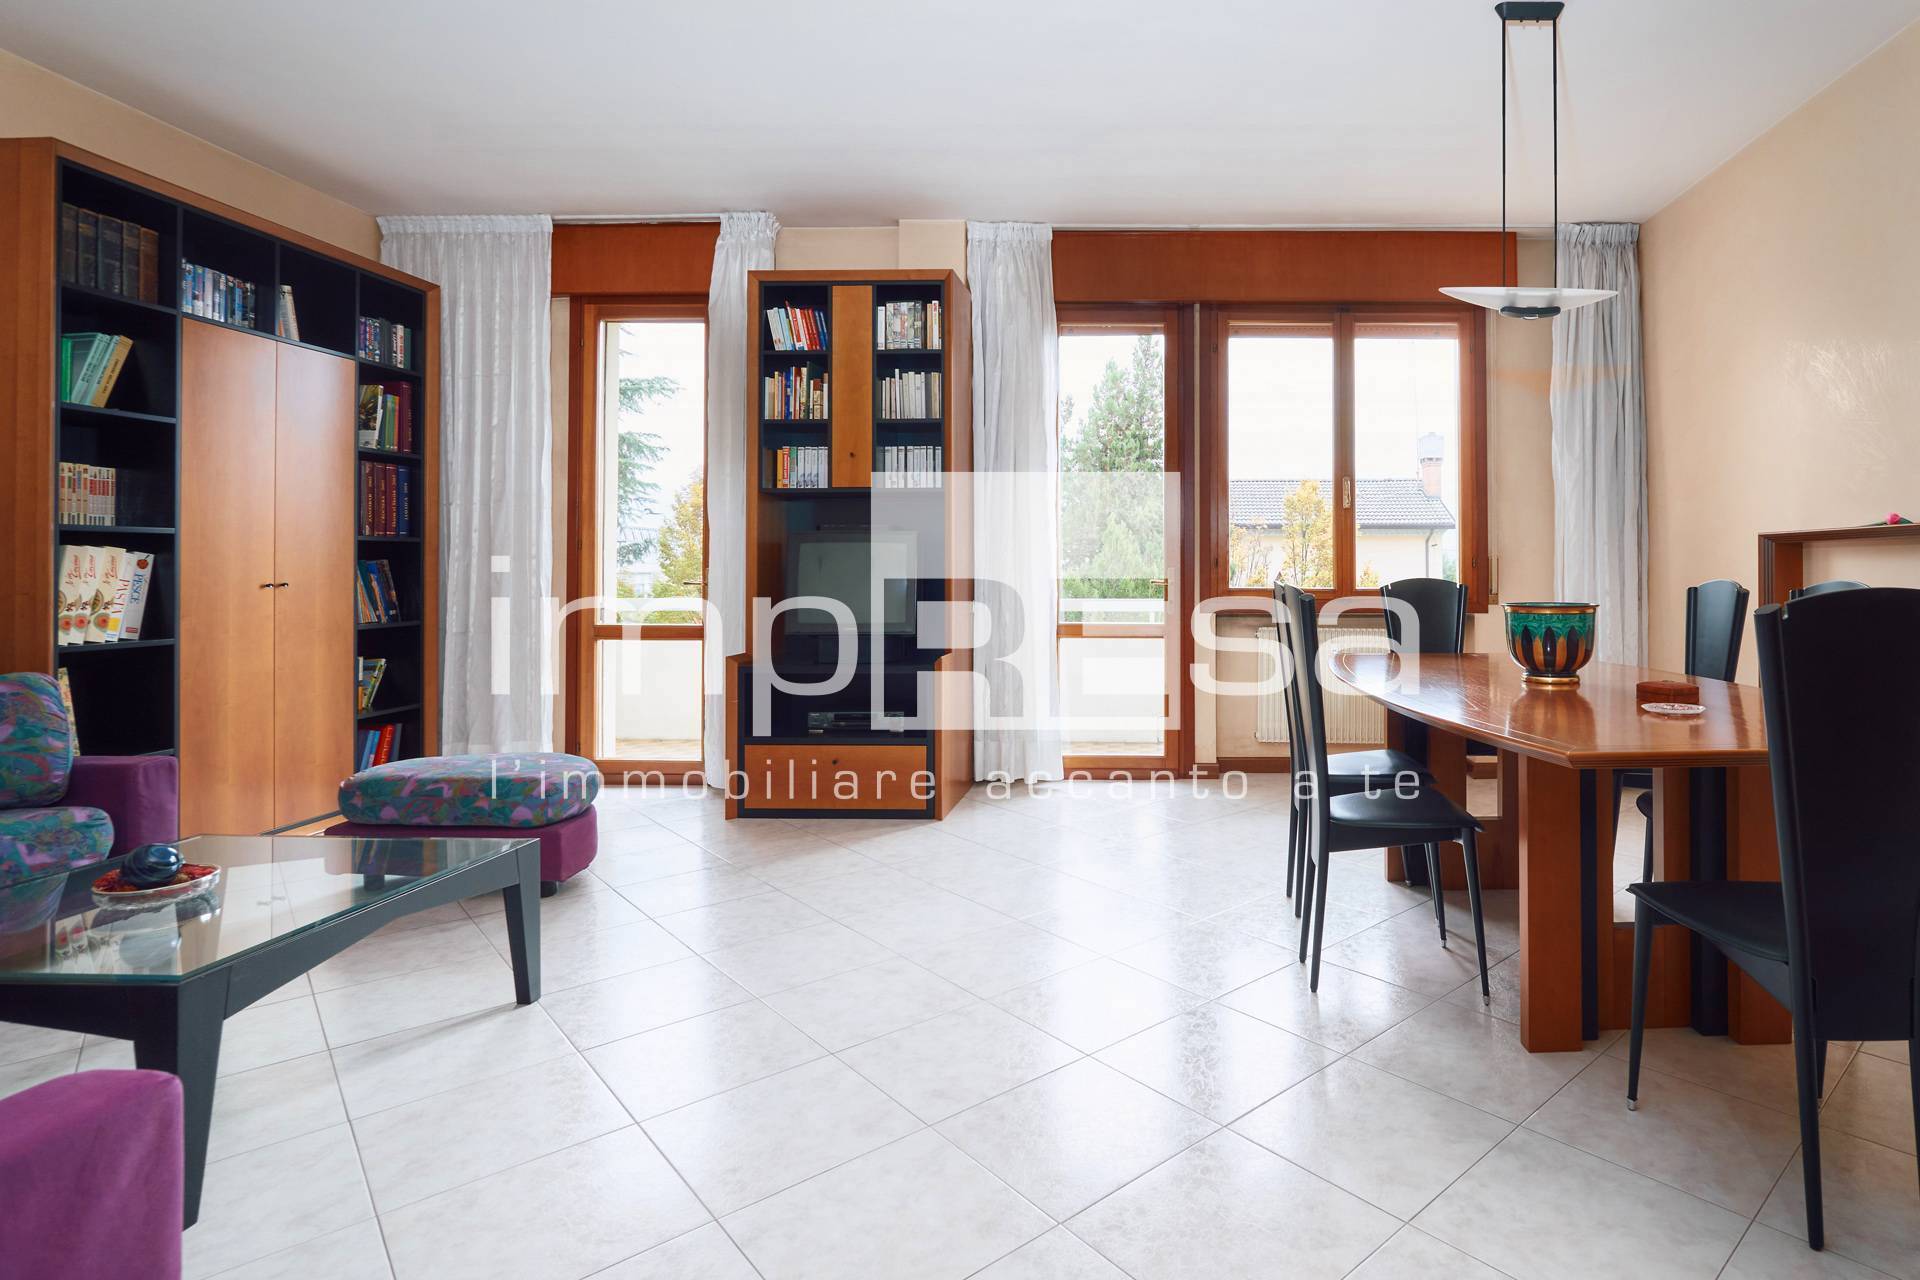 Appartamento in vendita a Conegliano, 5 locali, prezzo € 180.000 | PortaleAgenzieImmobiliari.it